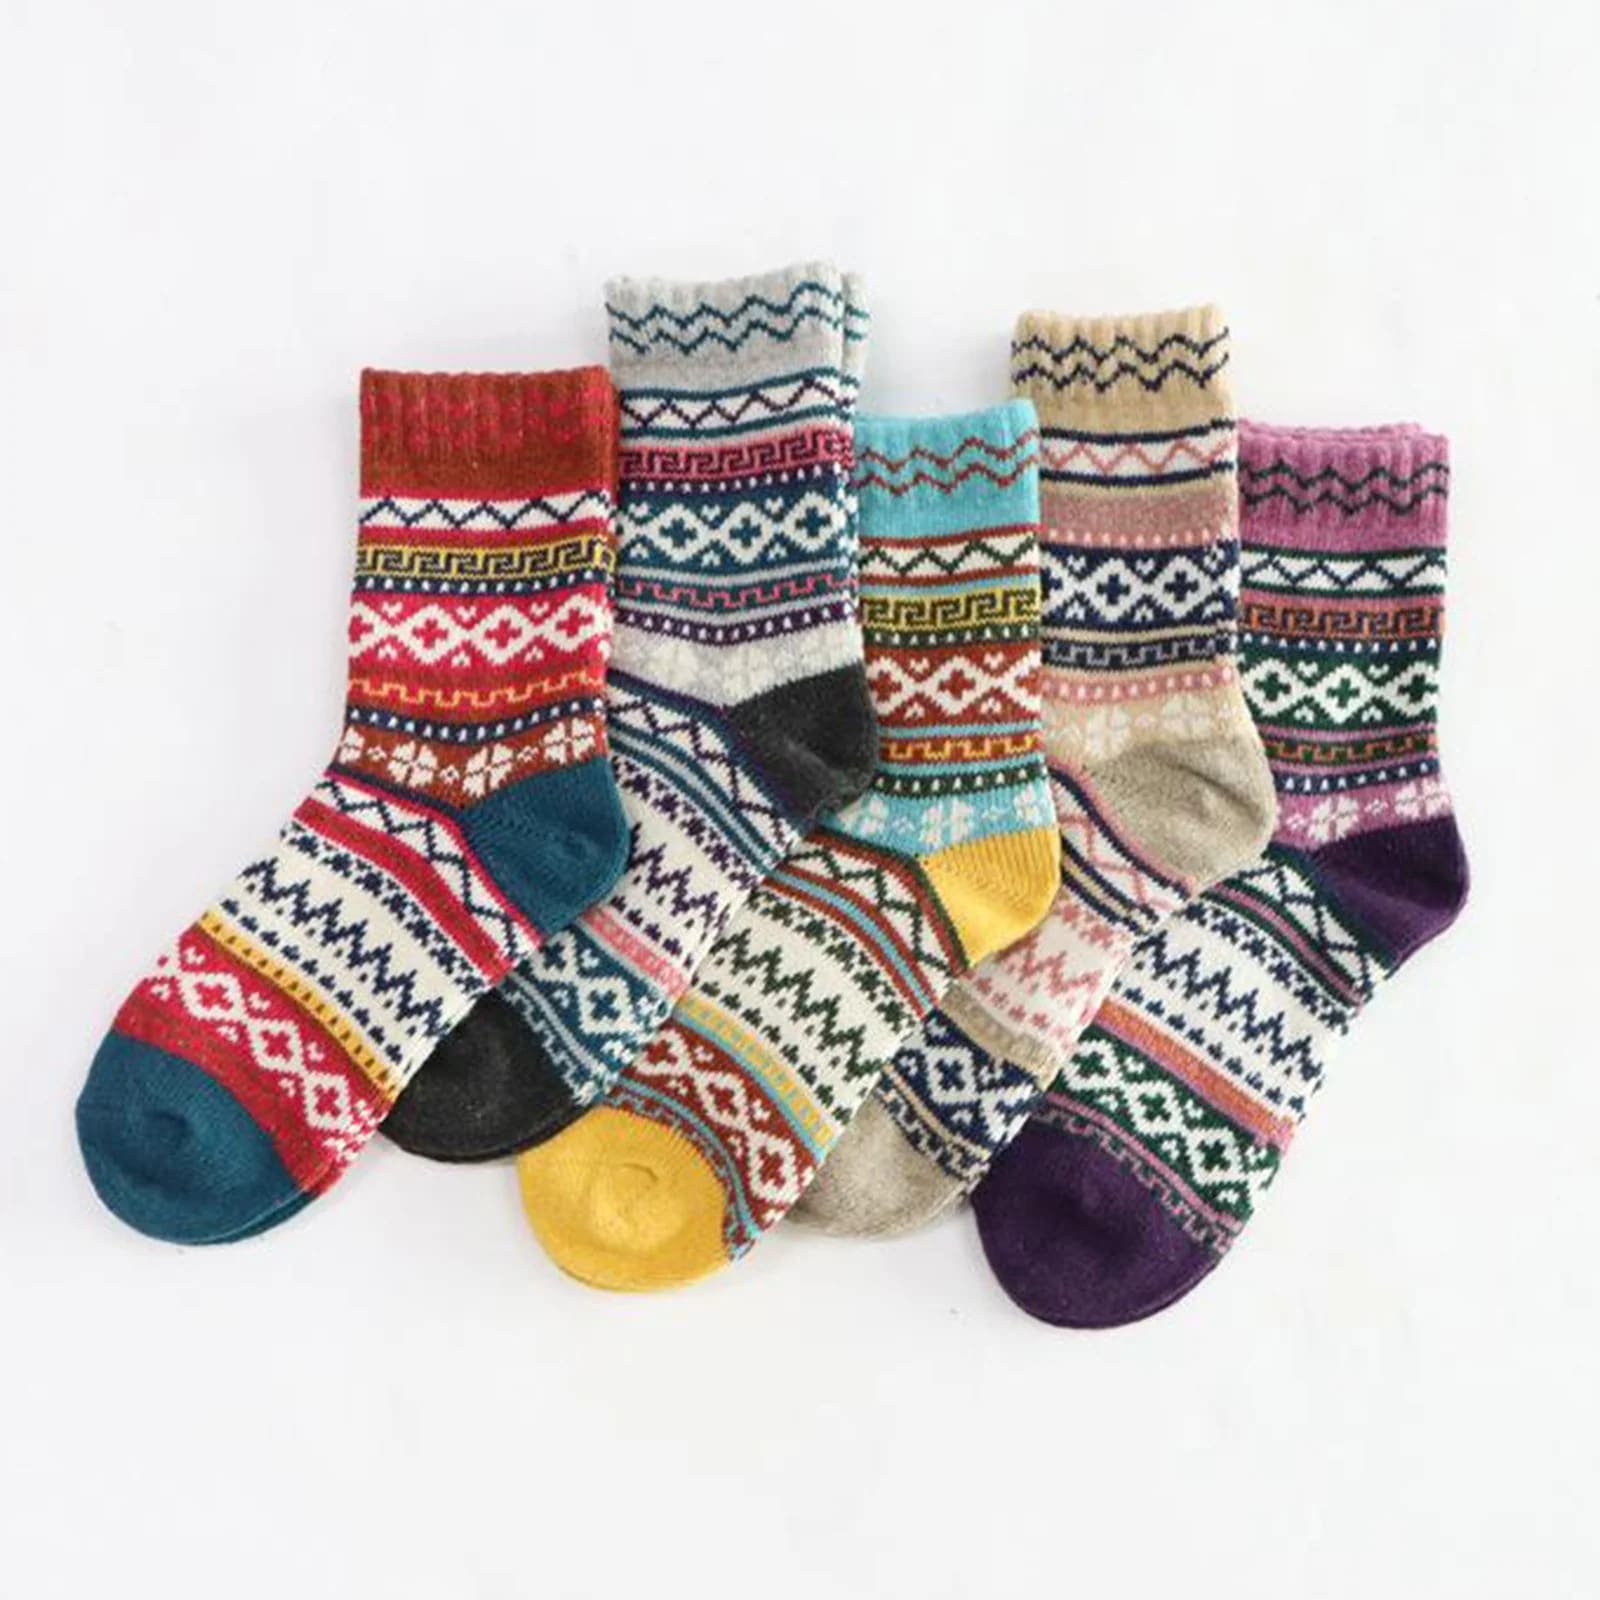 Patterned wool socks From AL Samah